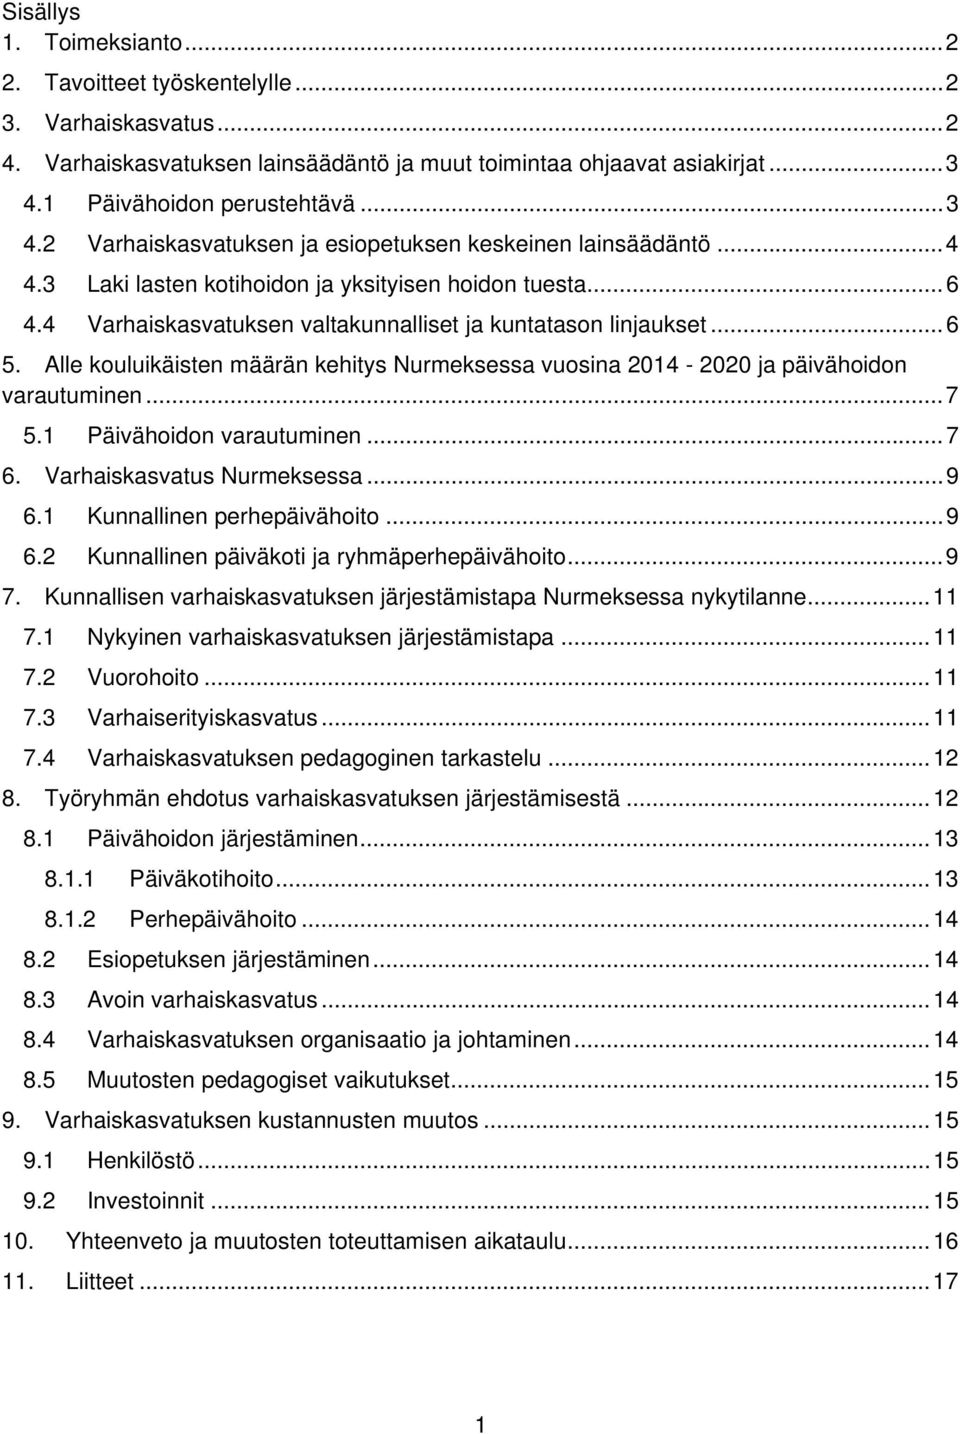 4 Varhaiskasvatuksen valtakunnalliset ja kuntatason linjaukset... 6 5. Alle kouluikäisten määrän kehitys Nurmeksessa vuosina 2014-2020 ja päivähoidon varautuminen... 7 5.1 Päivähoidon varautuminen.